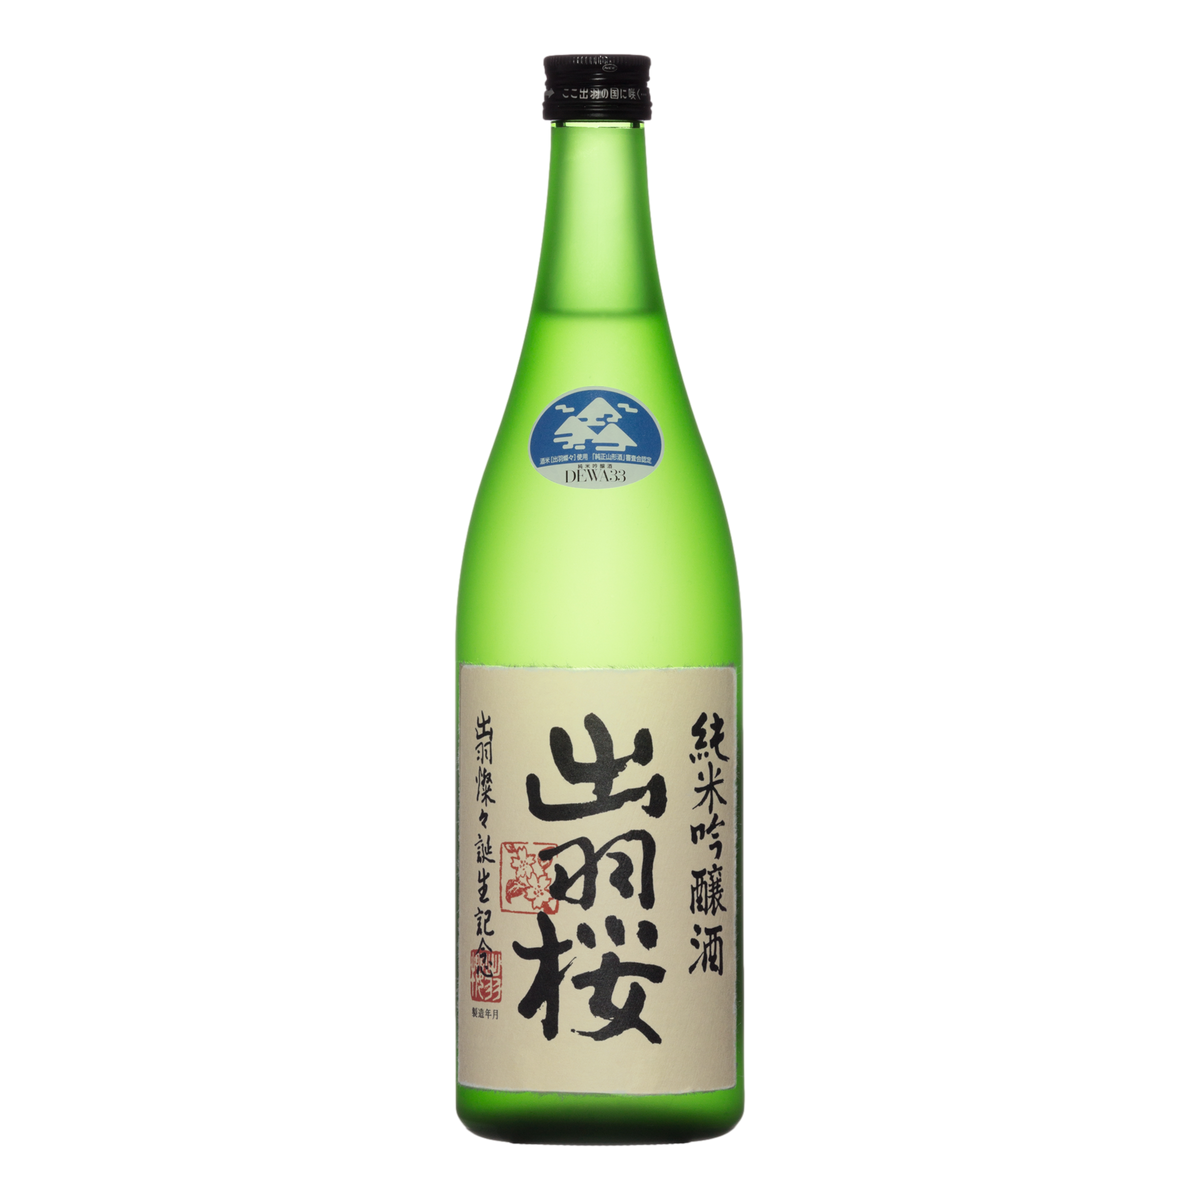 Dewazakura Dewasansan Junmai Ginjo Sake 720ml